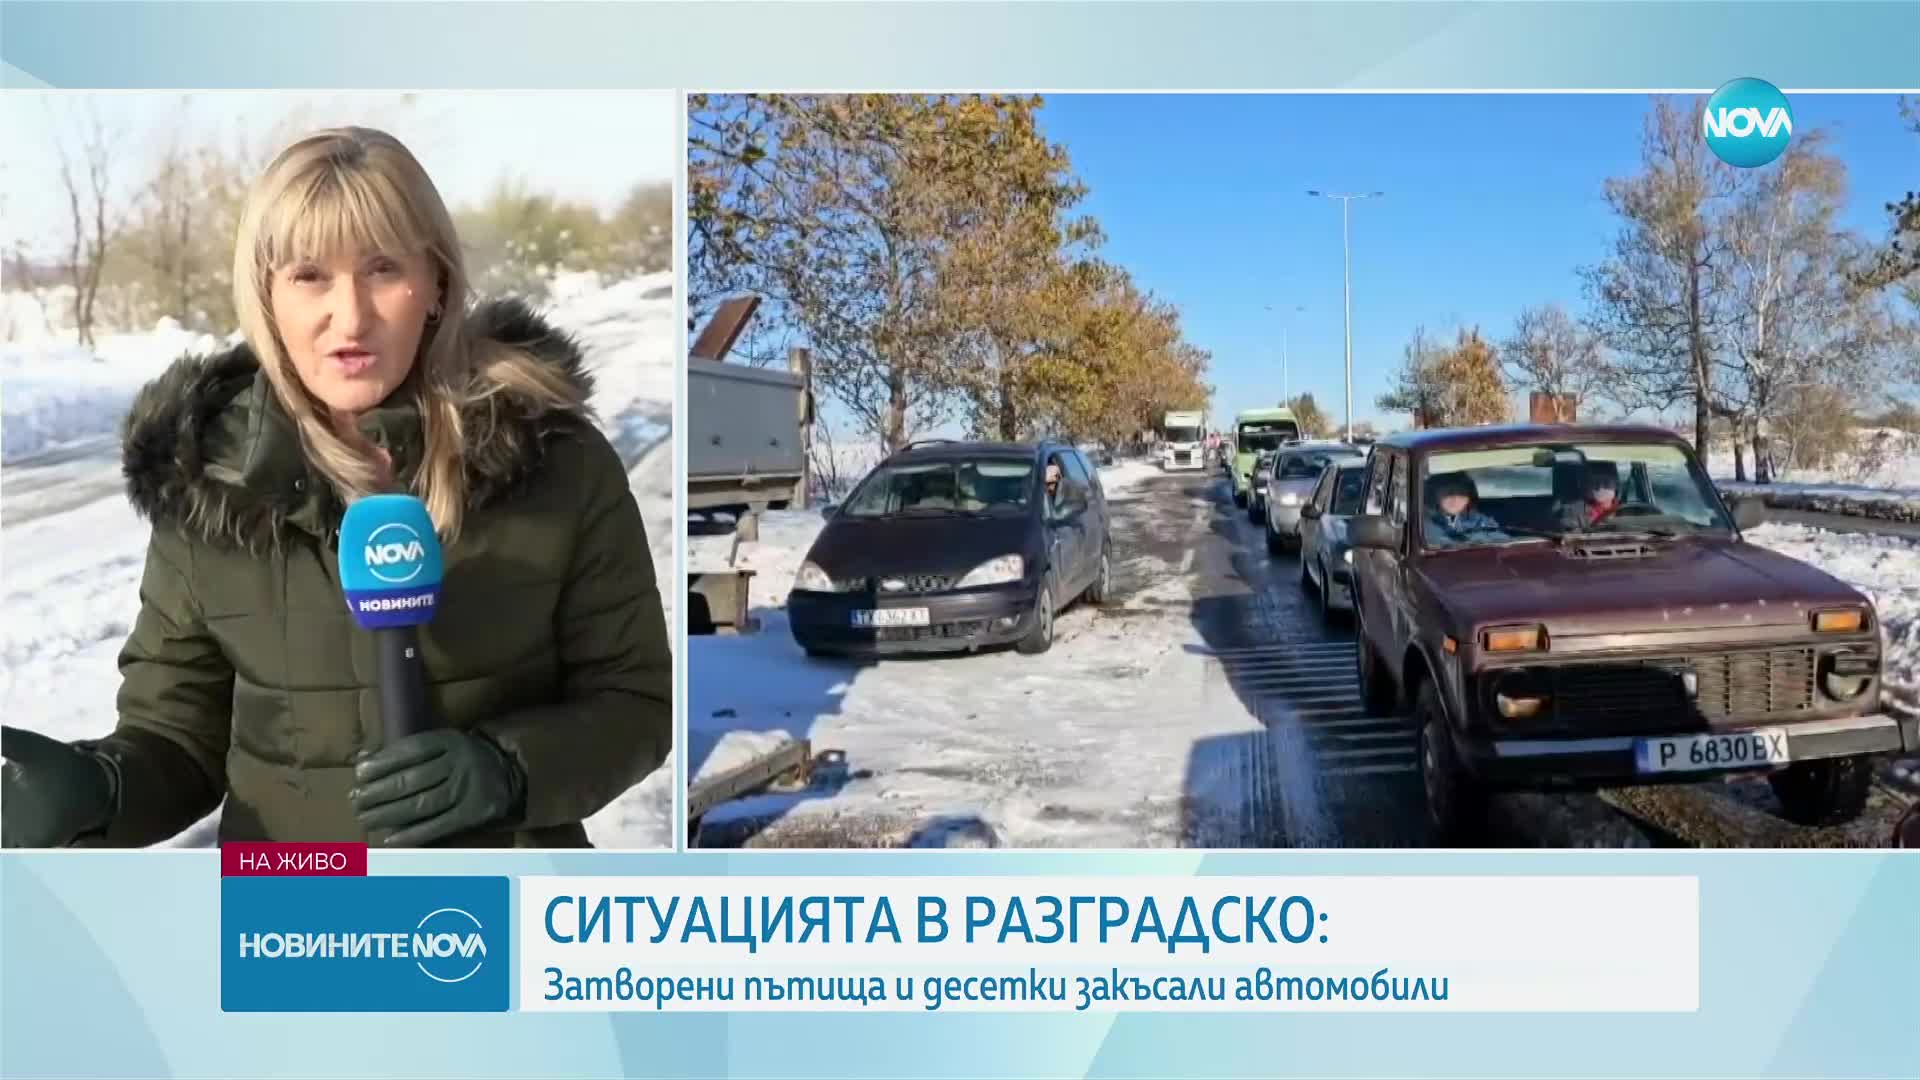 Ситуацията в Разградско: Затворени пътища и десетки закъсали автомобили